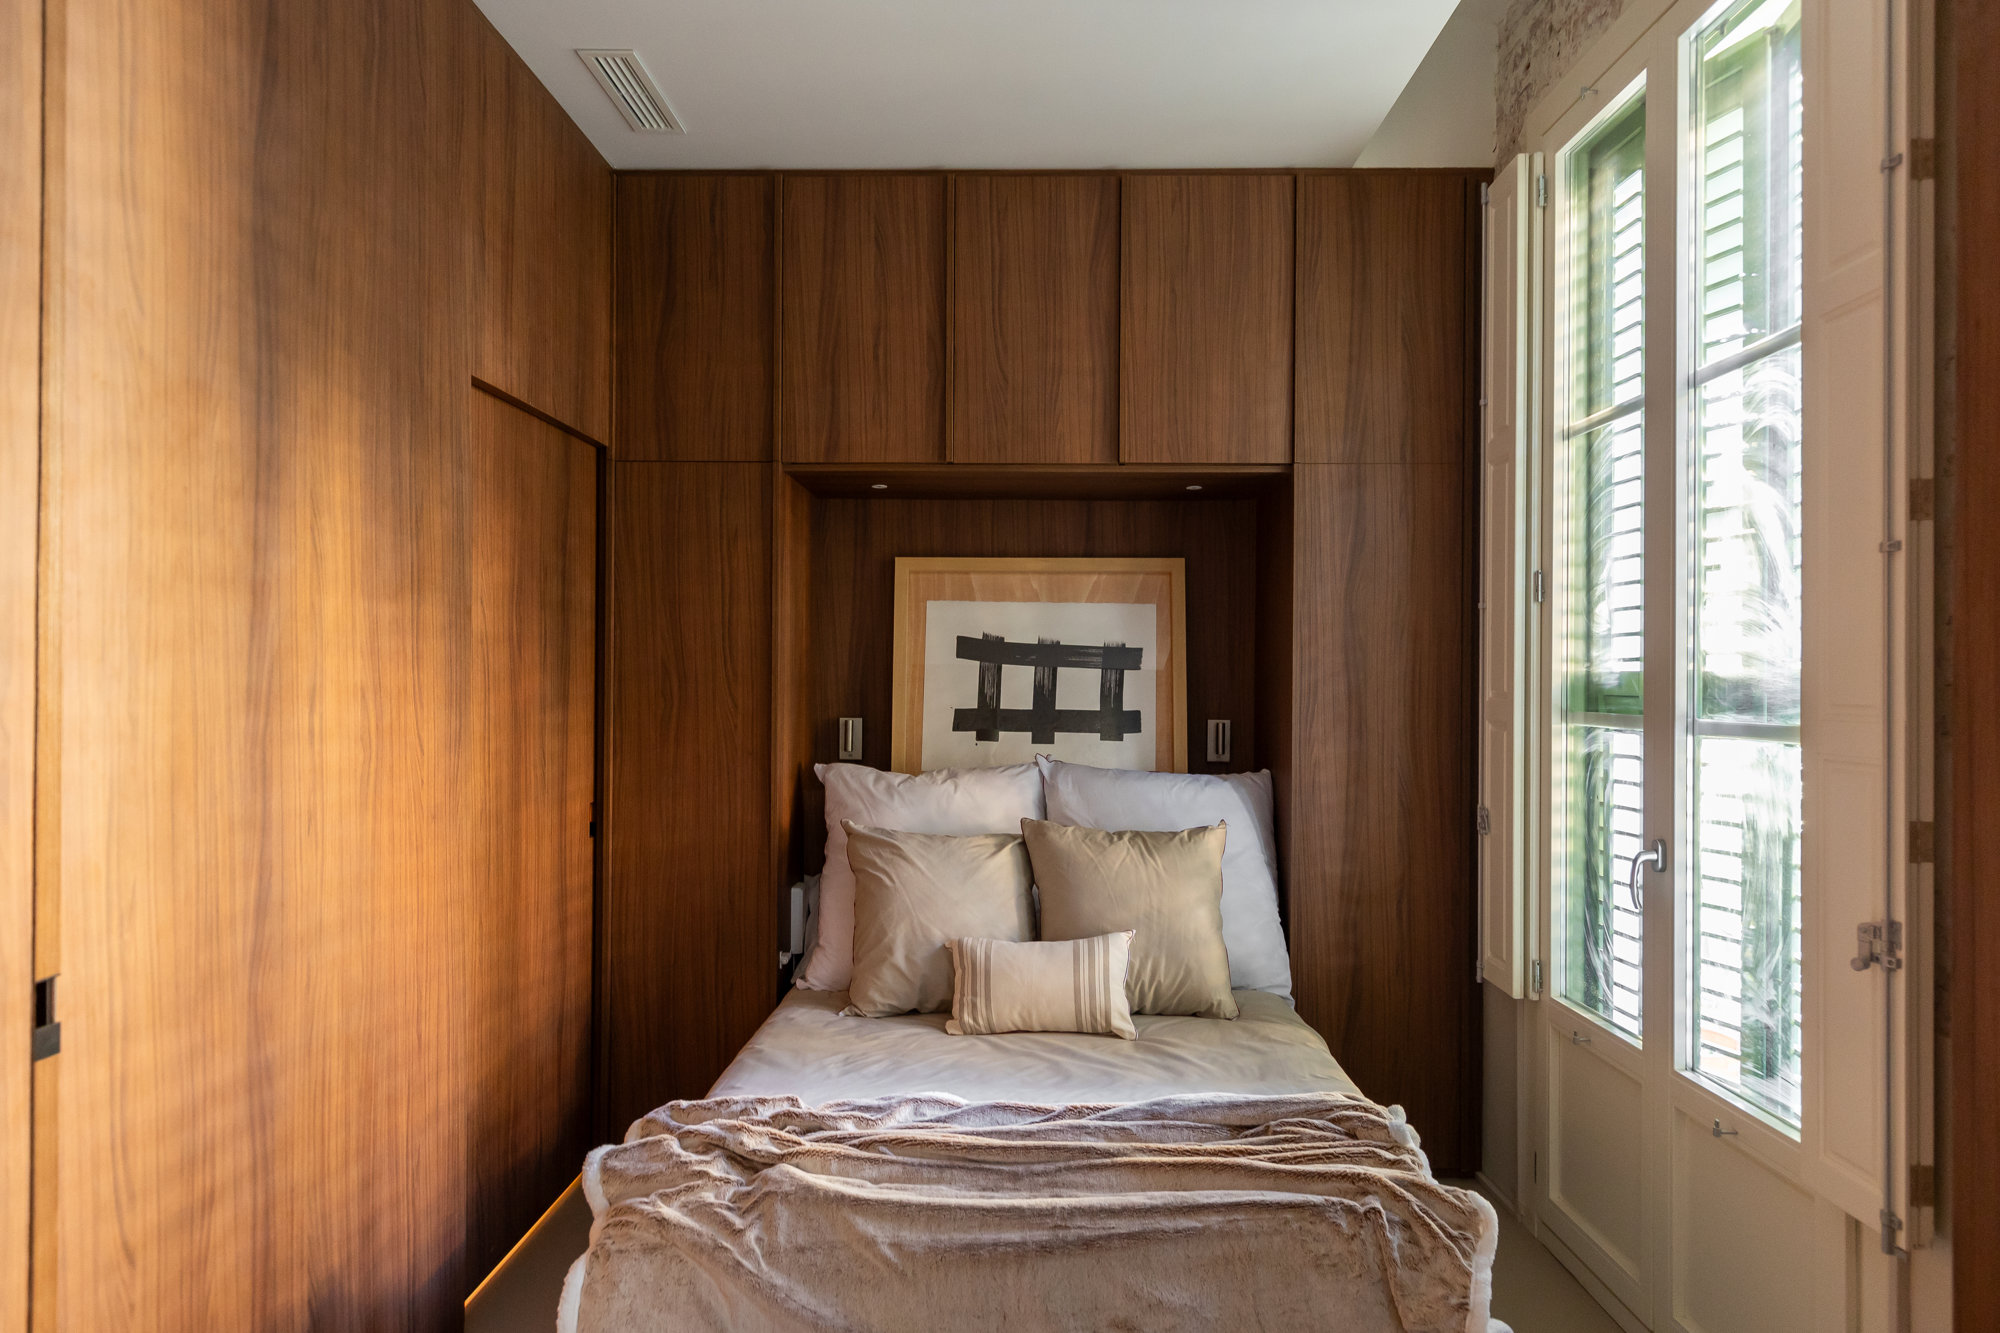 Un dormitorio protagonizado por la madera